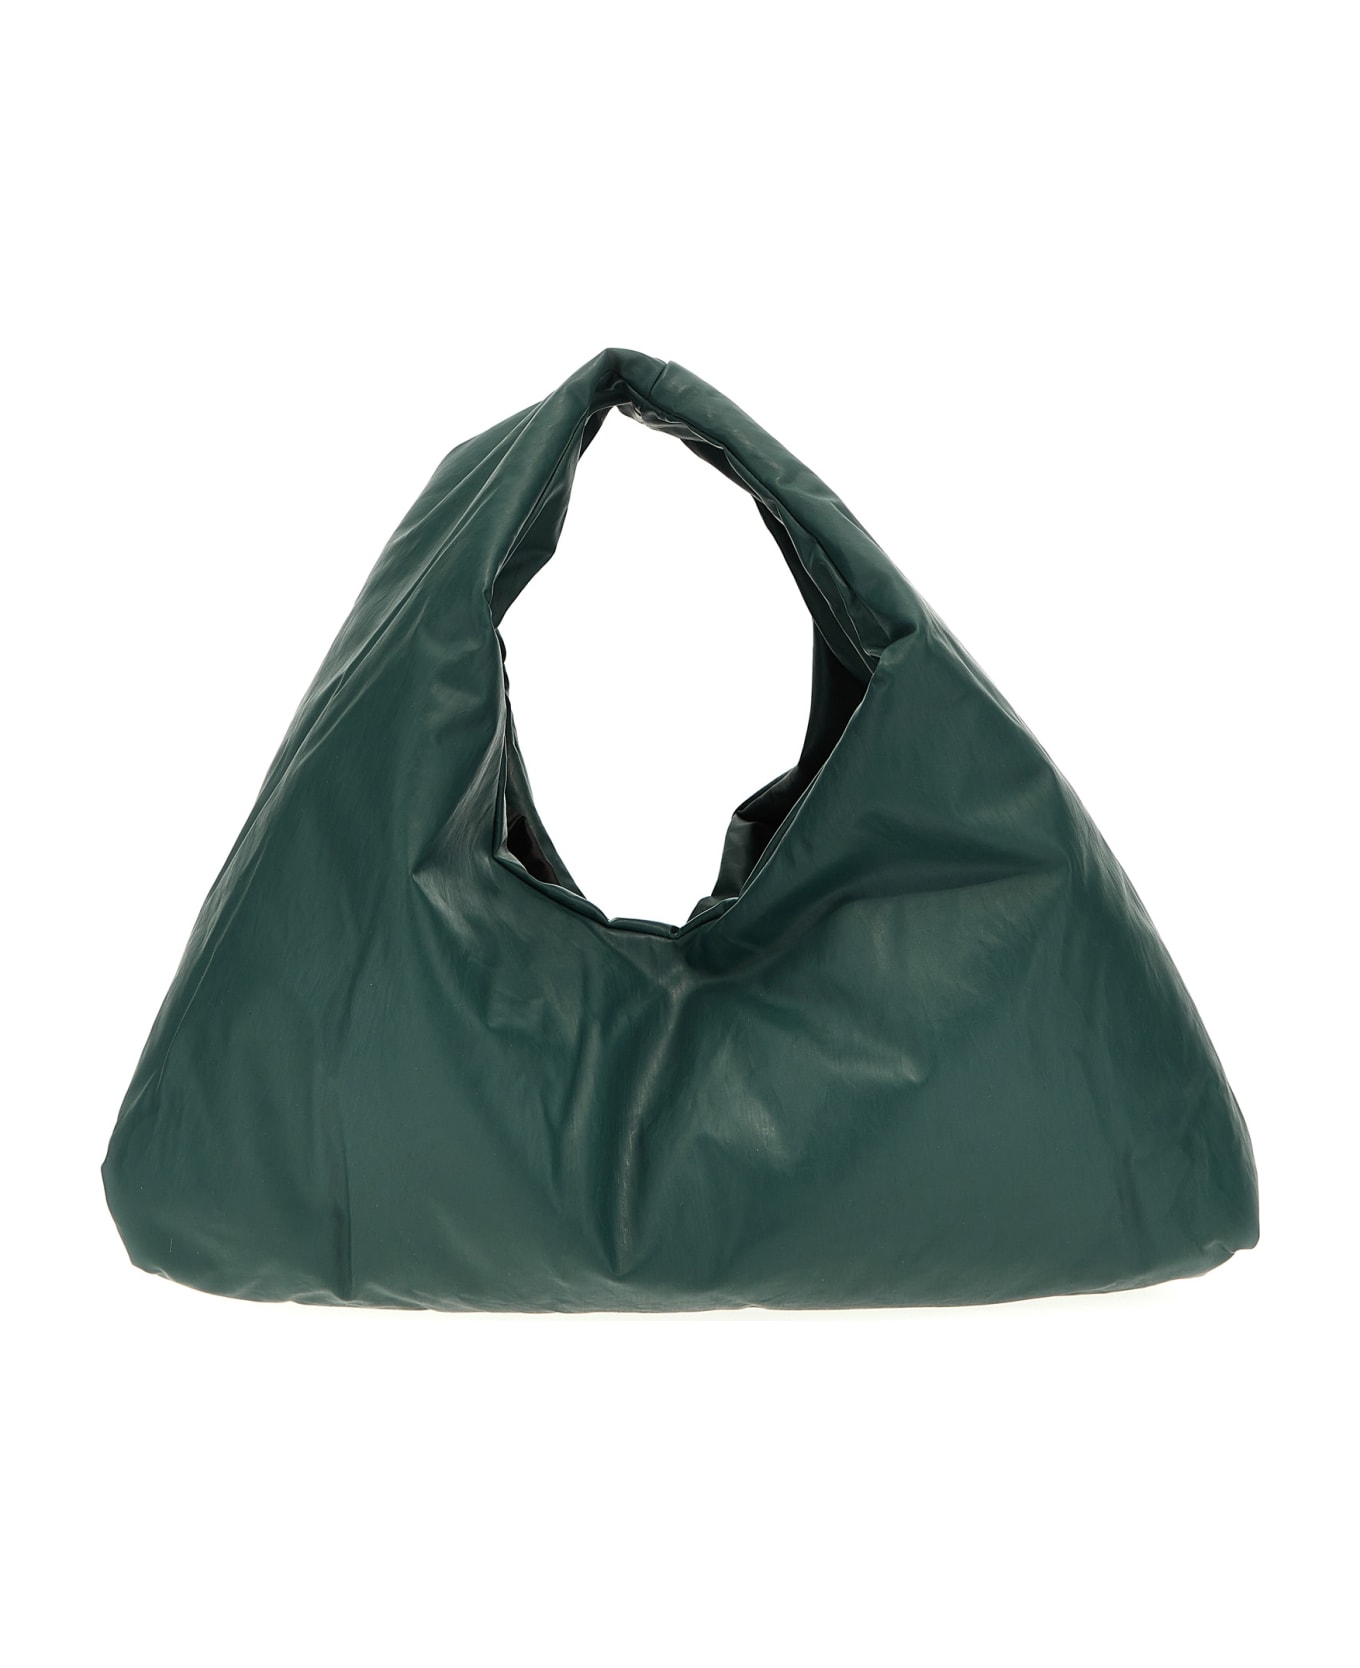 KASSL Editions 'anchor Small' Handbag - Green トートバッグ